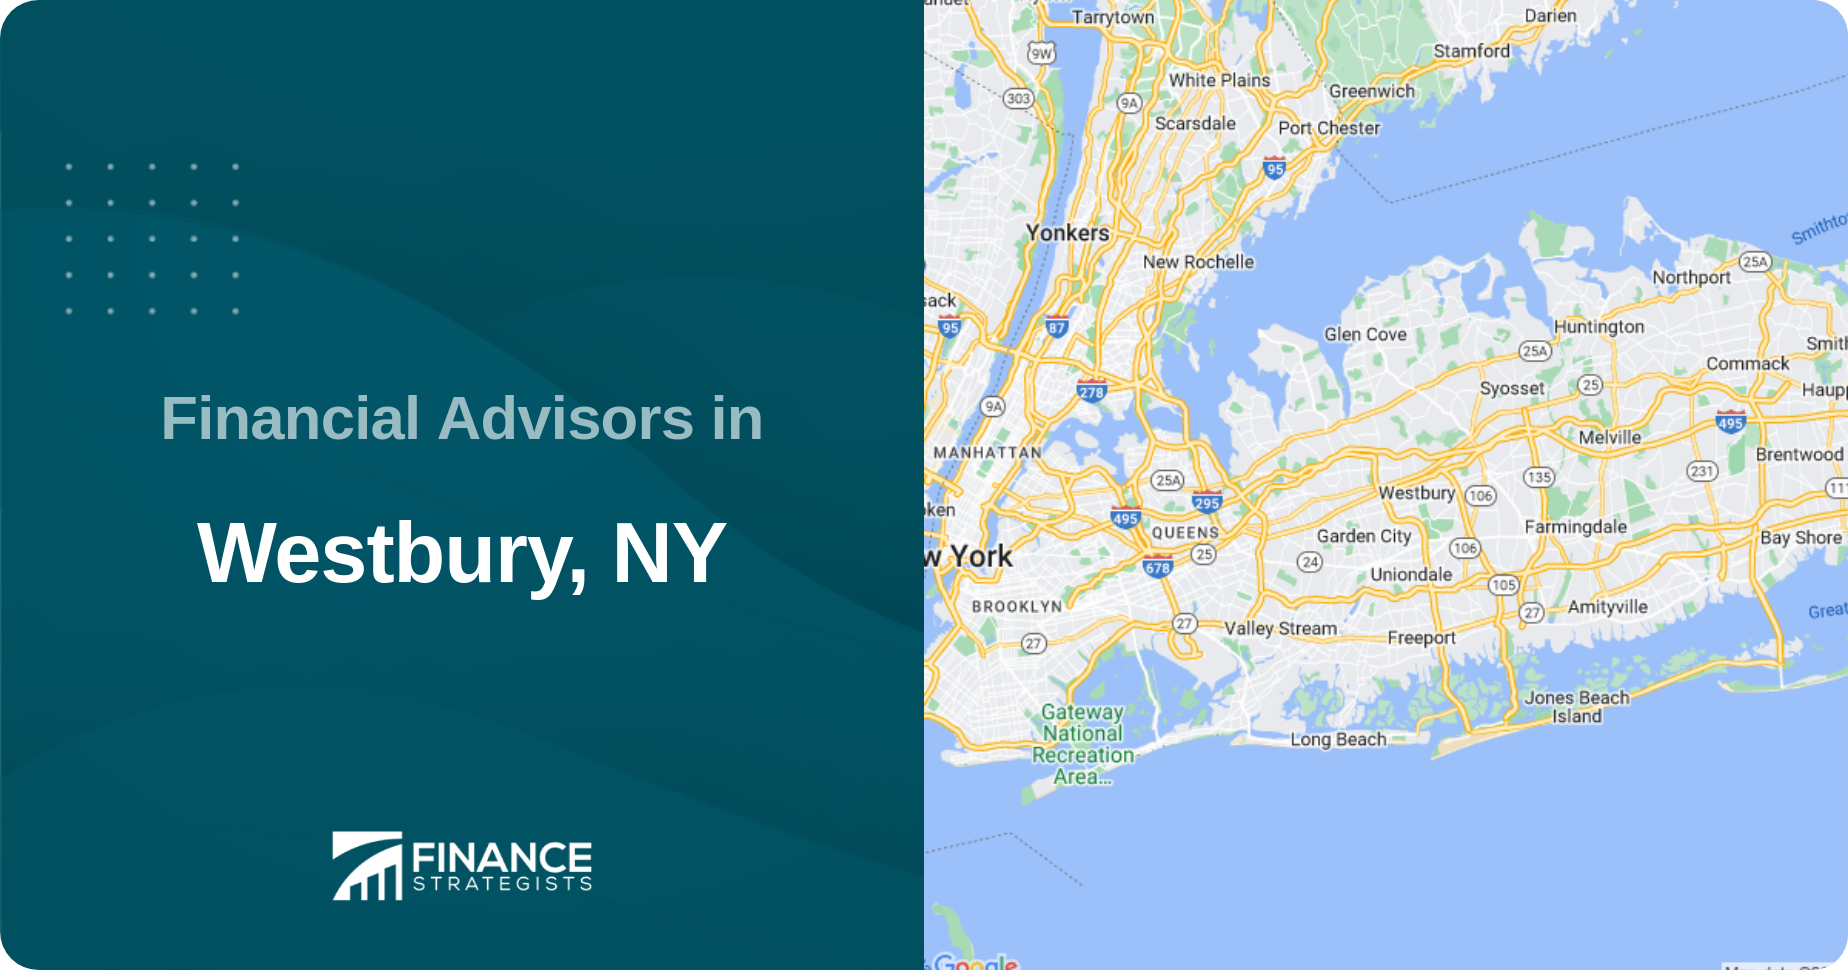 Financial Advisors in Westbury, NY